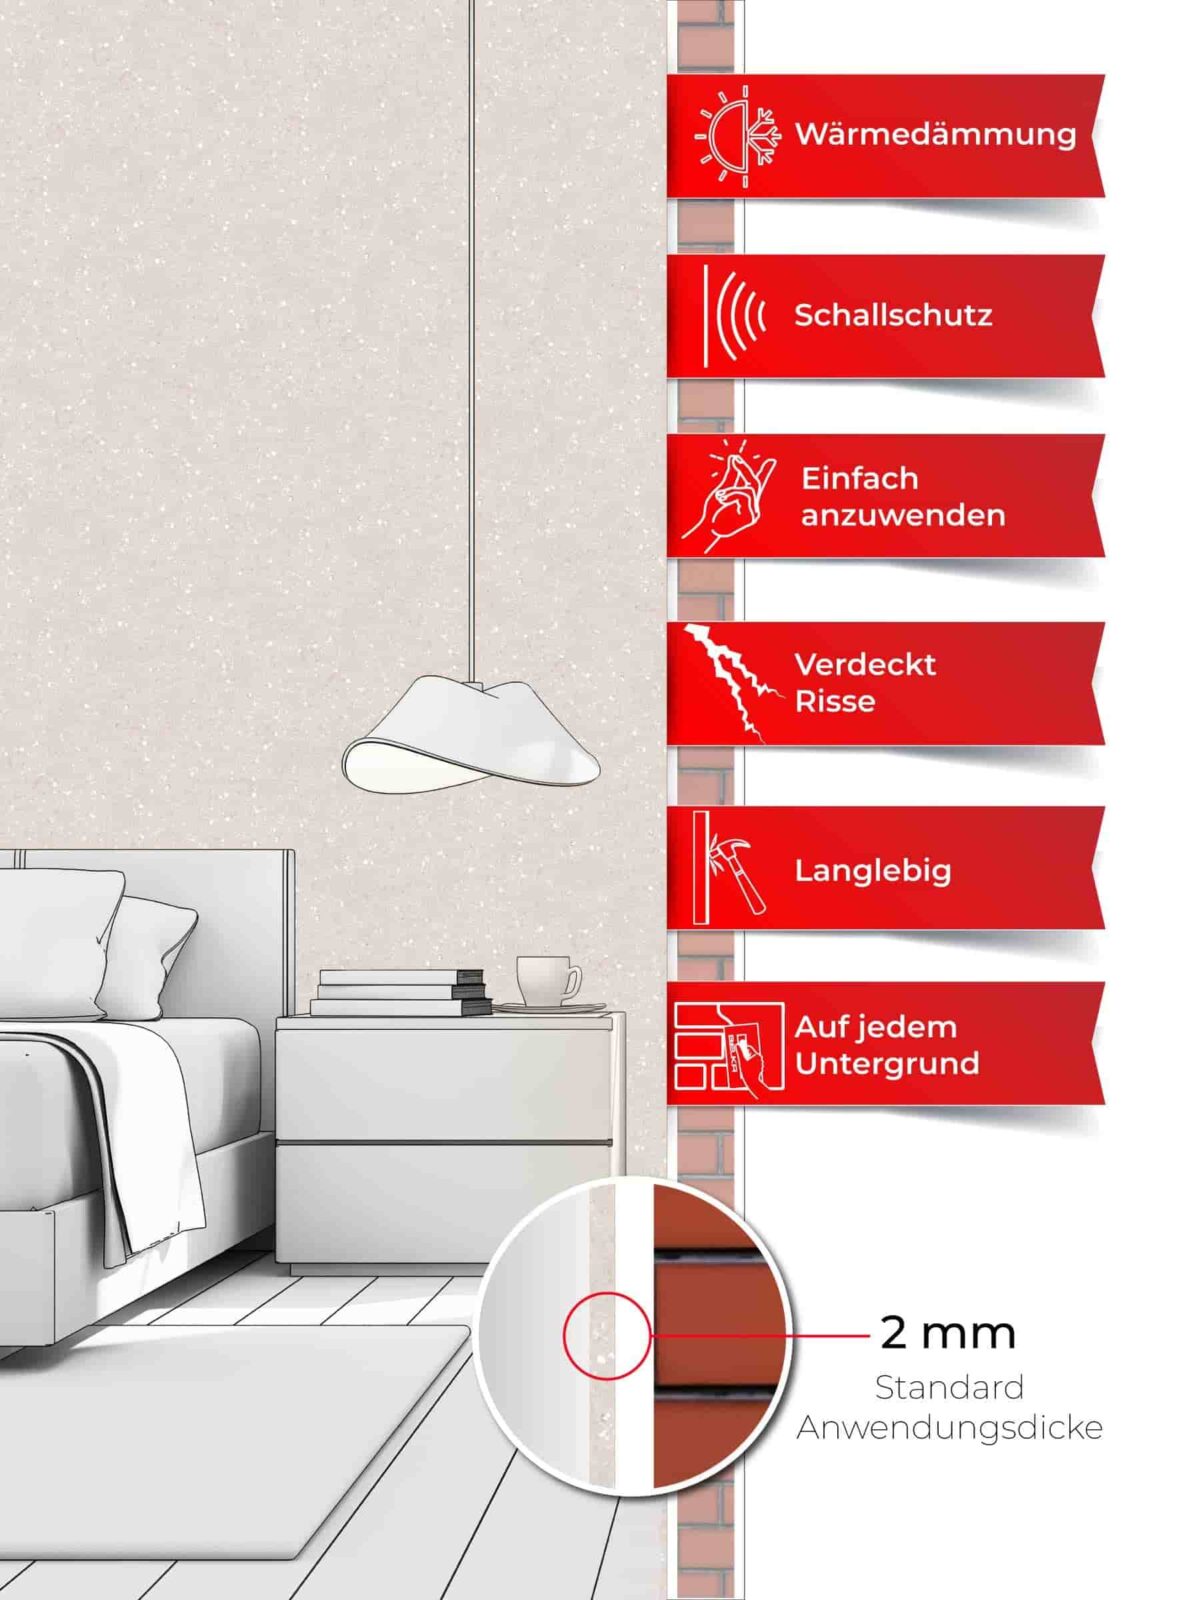 Ein Schlafzimmer, dessen Wände mit Belka Tapete Creme Muster tapeziert sind. Produktmerkmale auf sechs roten Etiketten.